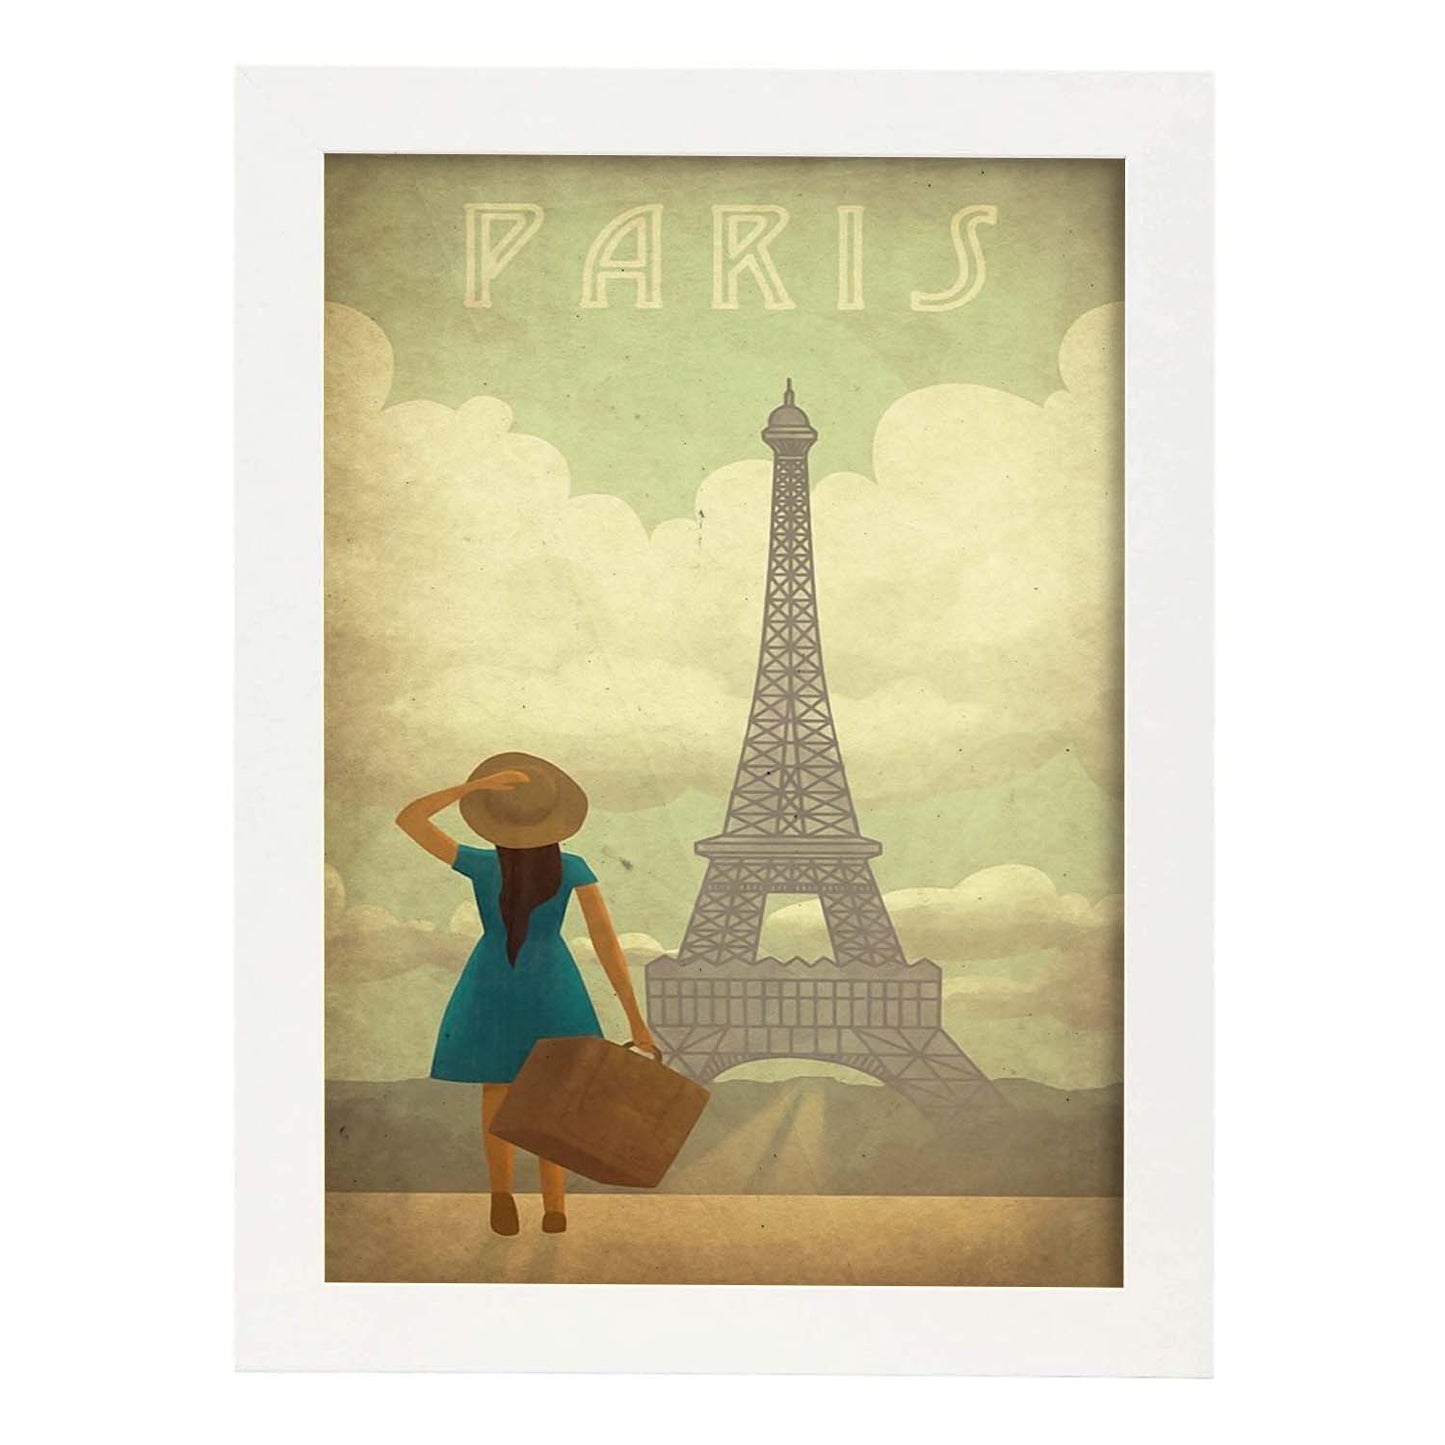 Poster vintage de Paris vintage. con imágenes vintage y de publicidad antigua.-Artwork-Nacnic-A4-Marco Blanco-Nacnic Estudio SL